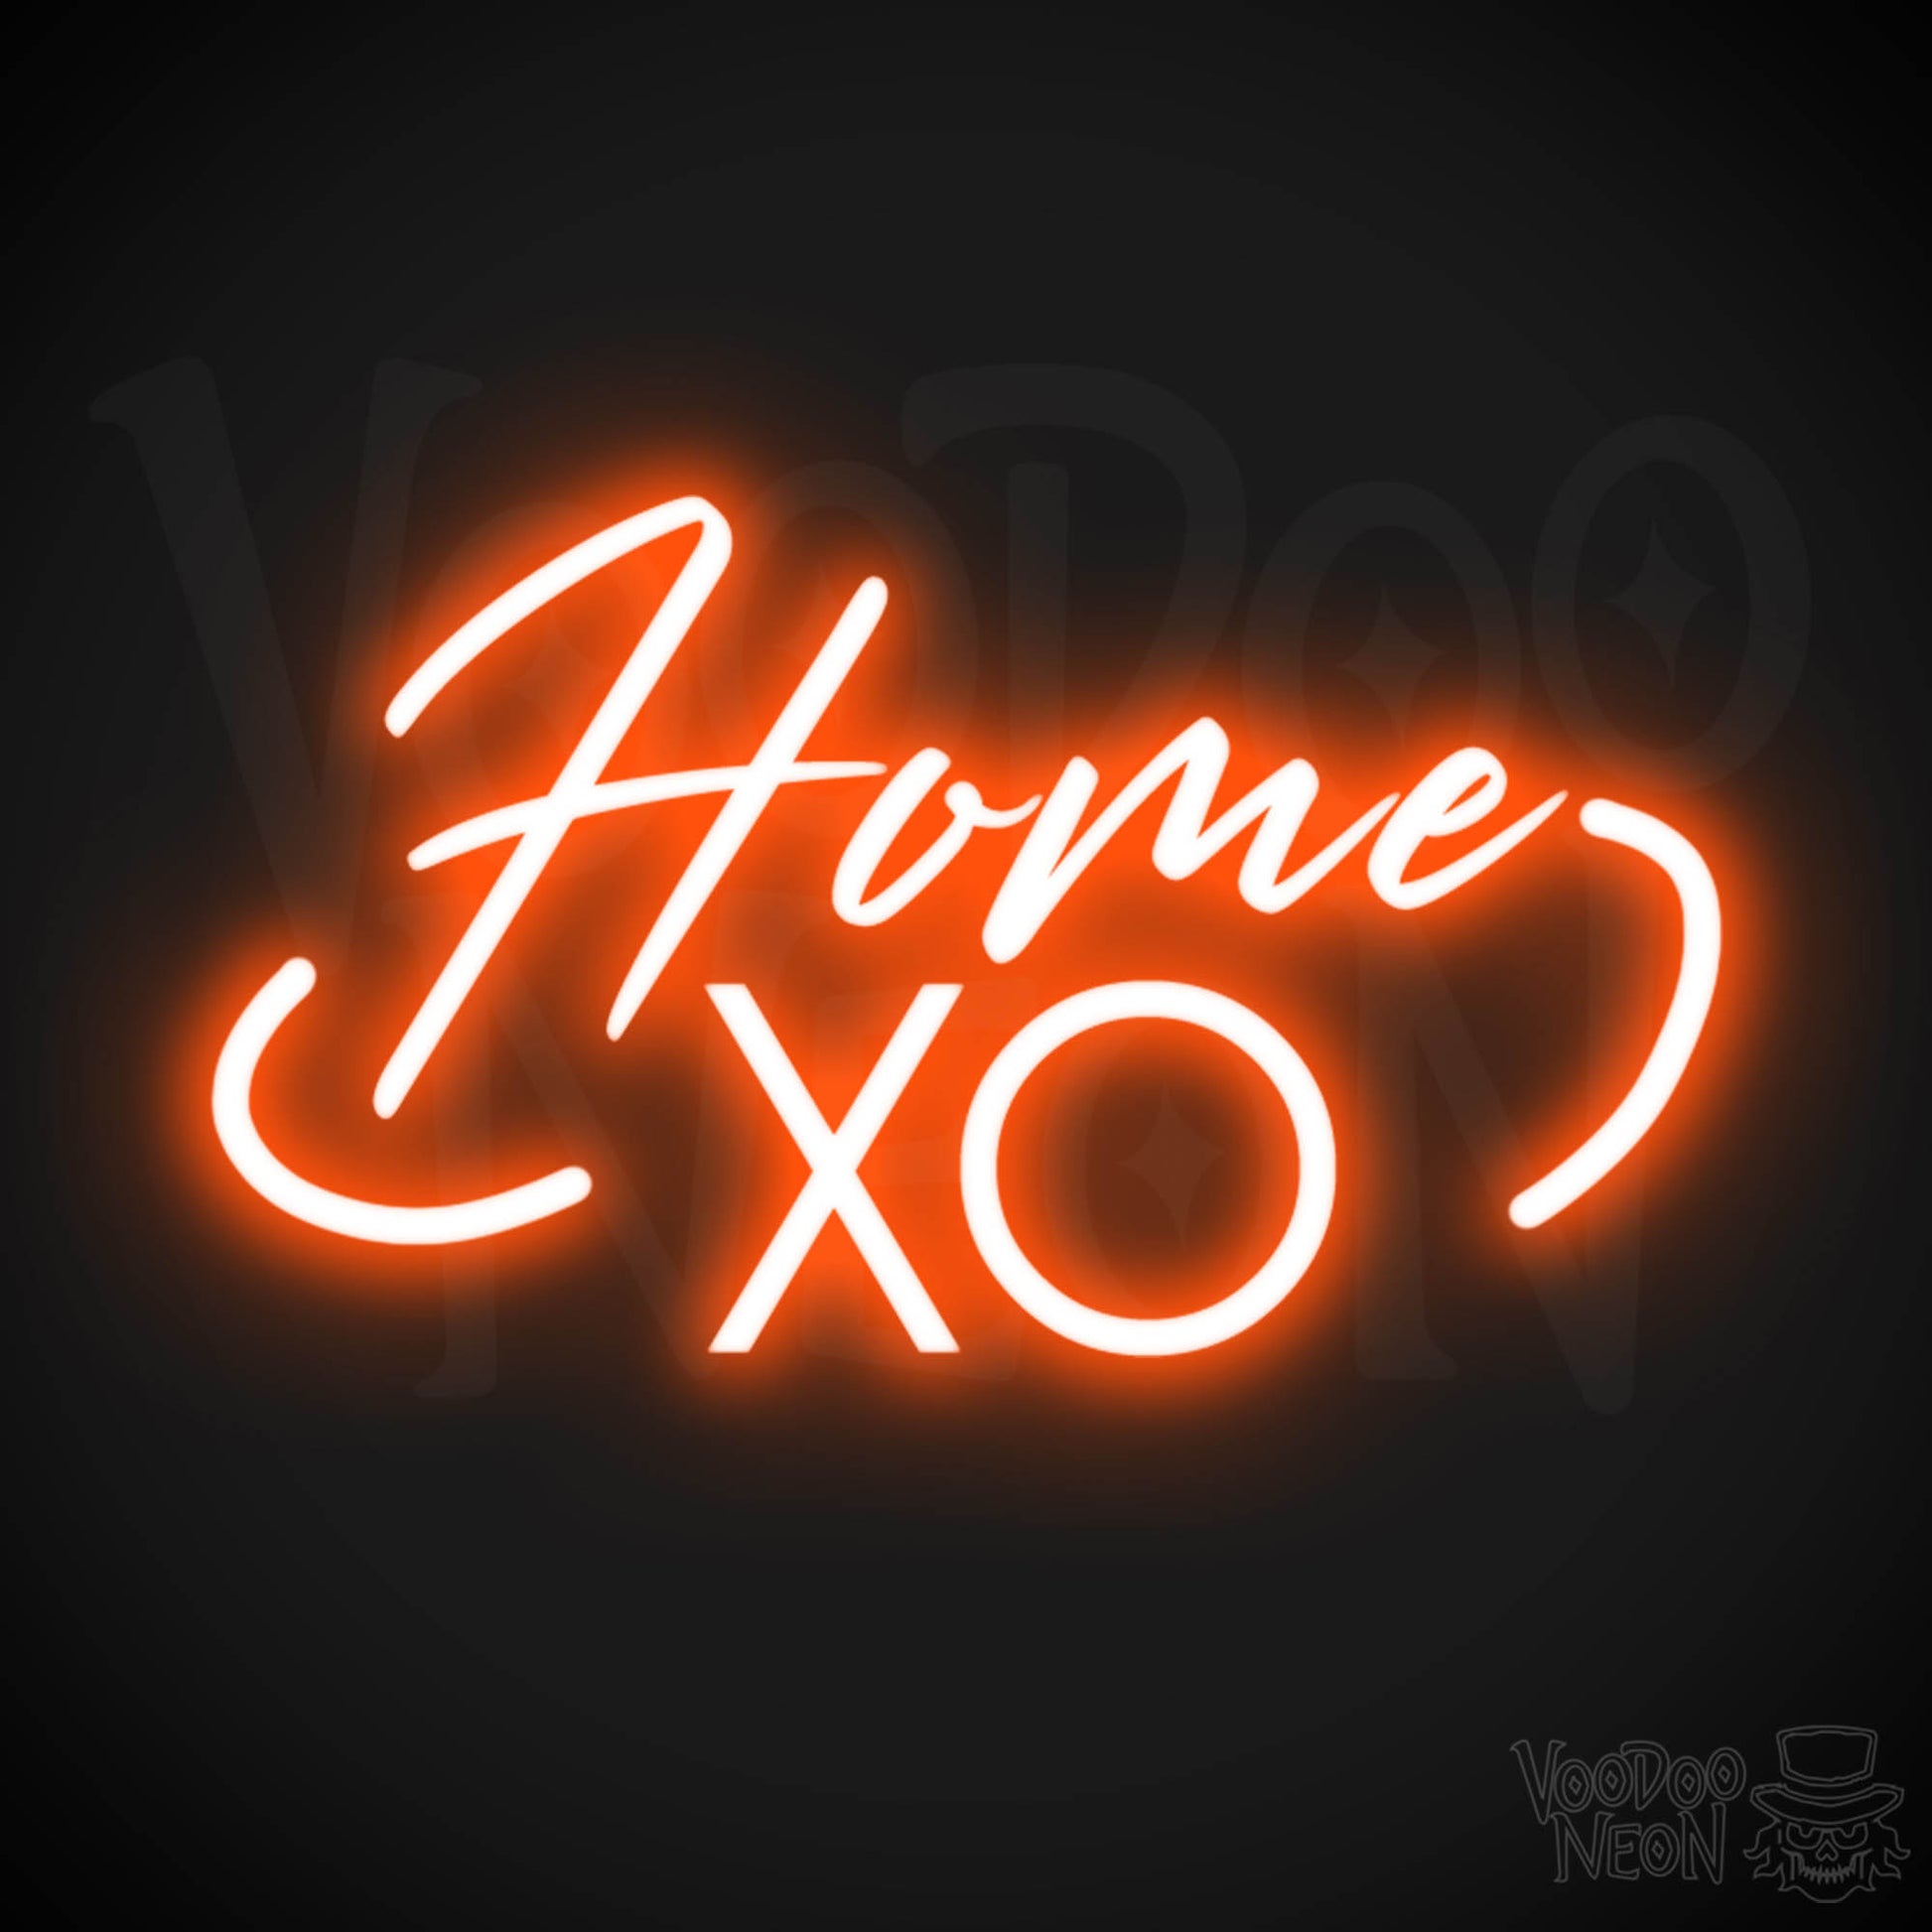 Home XO Neon Sign - Neon Home XO Sign - Wall Art - Color Orange